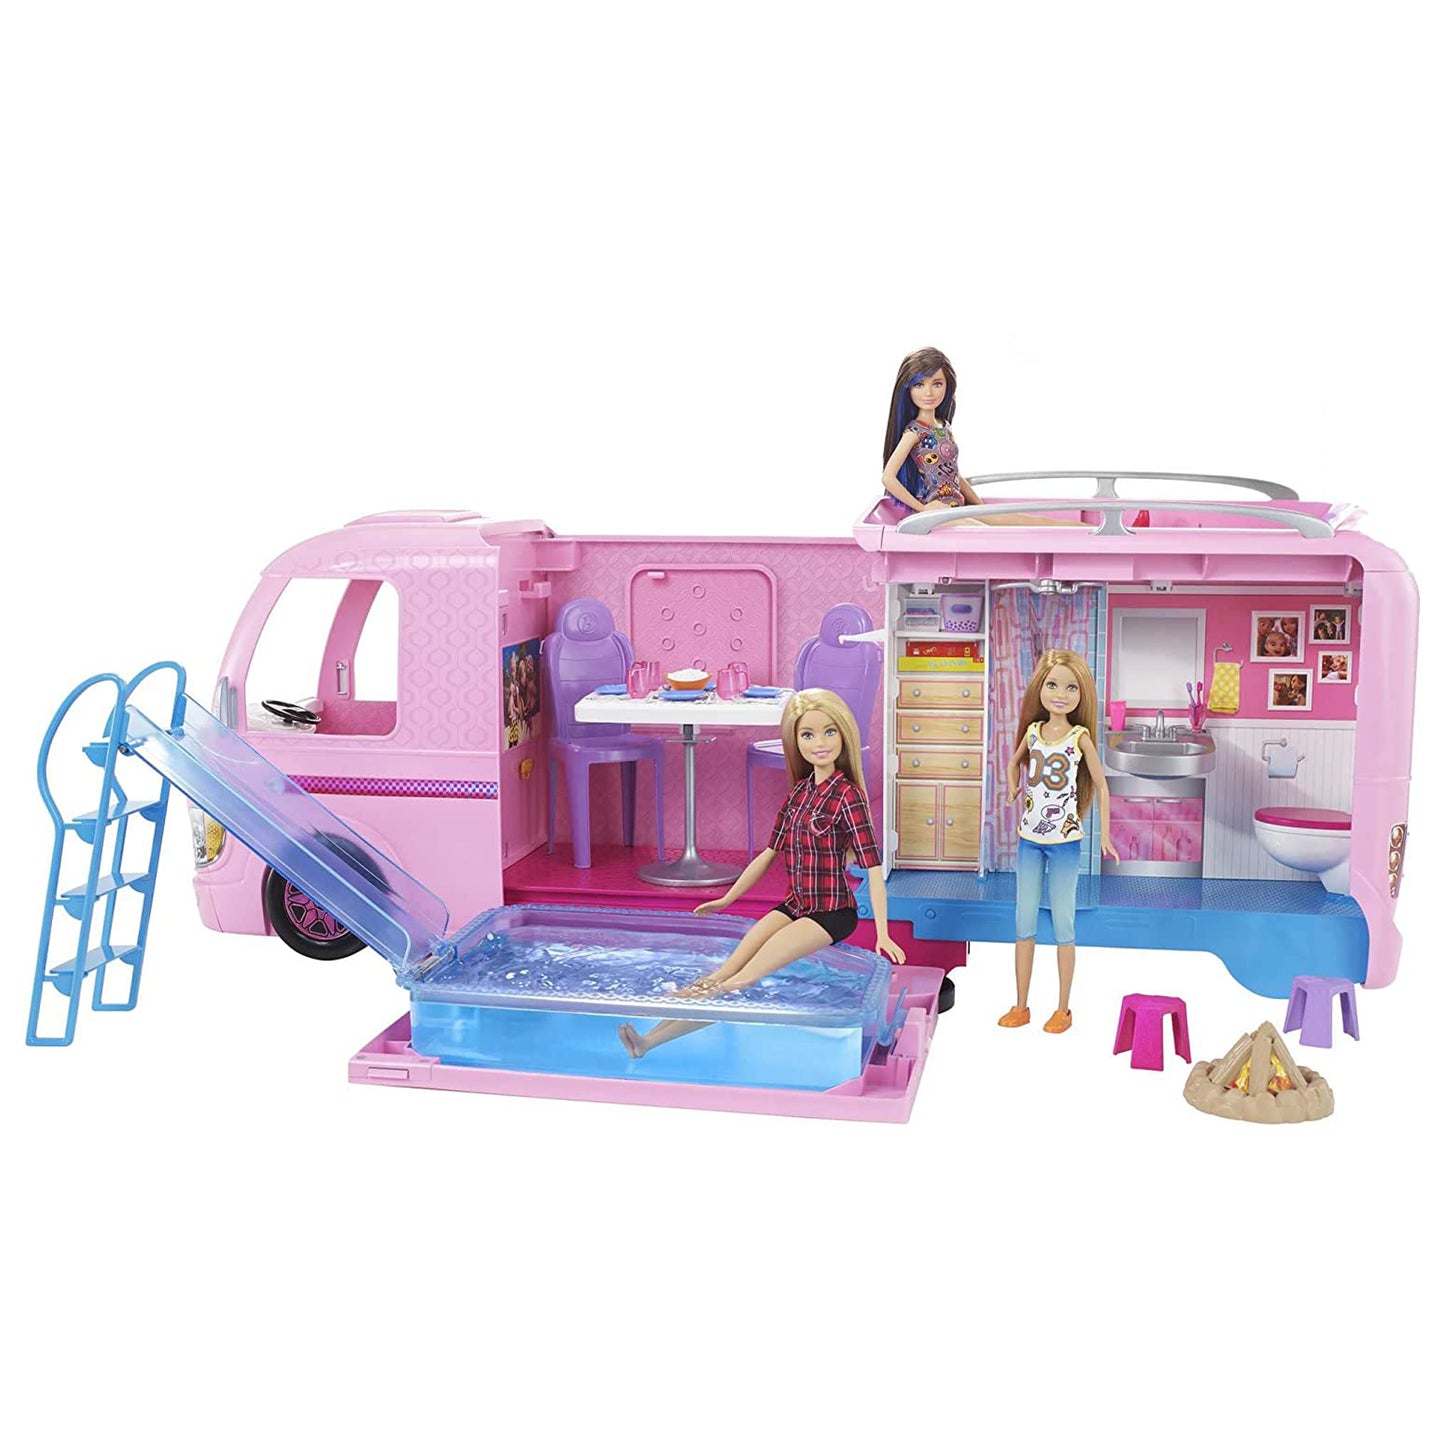 Barbie FBR34 - Super Abenteuer Camper, Puppen Camping Wohnwagen mit Zubehör, Mädchen Spielzeug ab 3 Jahren [Exklusiv bei Amazon]